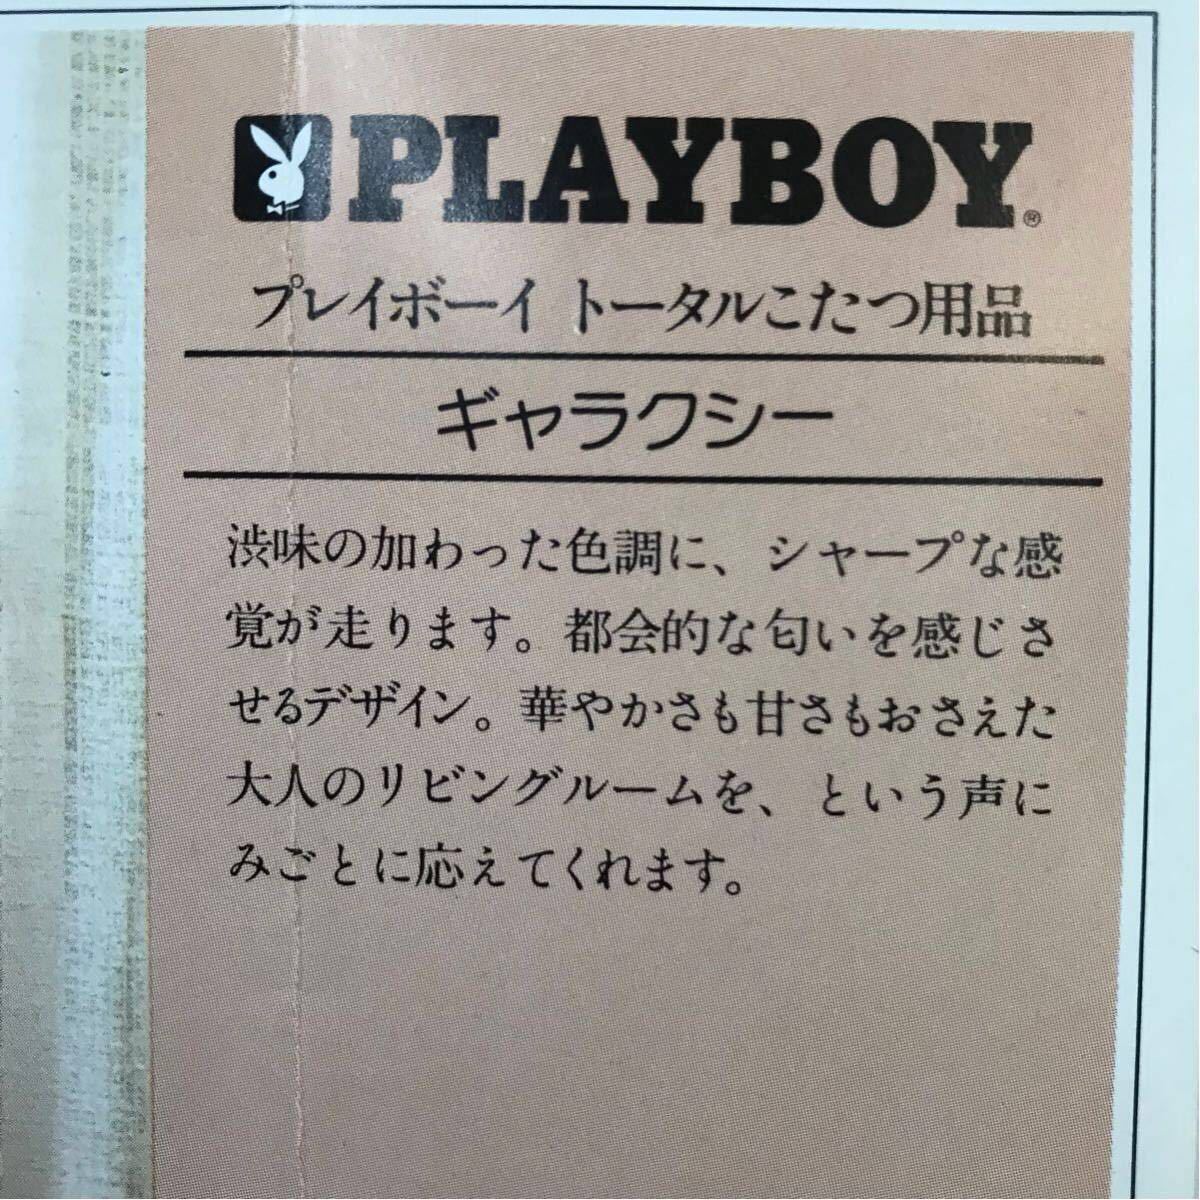 [ новый товар ] обычная цена 56000 иен котацу futon комплект Play Boy Galaxy Galaxy 210×210 подпалина чай цвет PLAYBOY редкость retro 